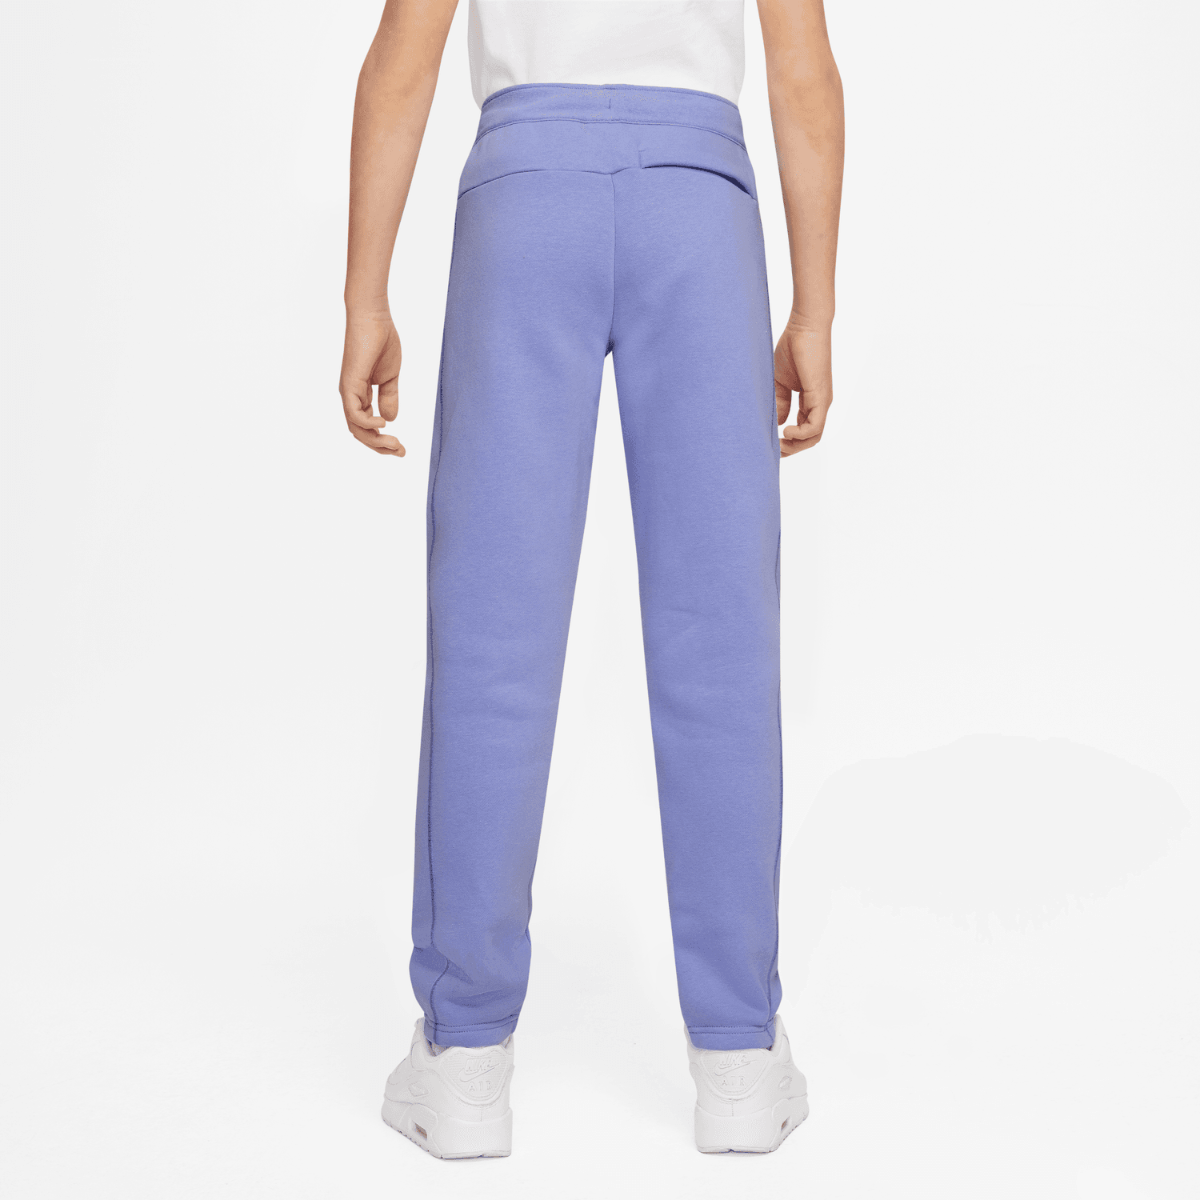 Pantalon Nike Air Junior - Violet/Marron/Blanc